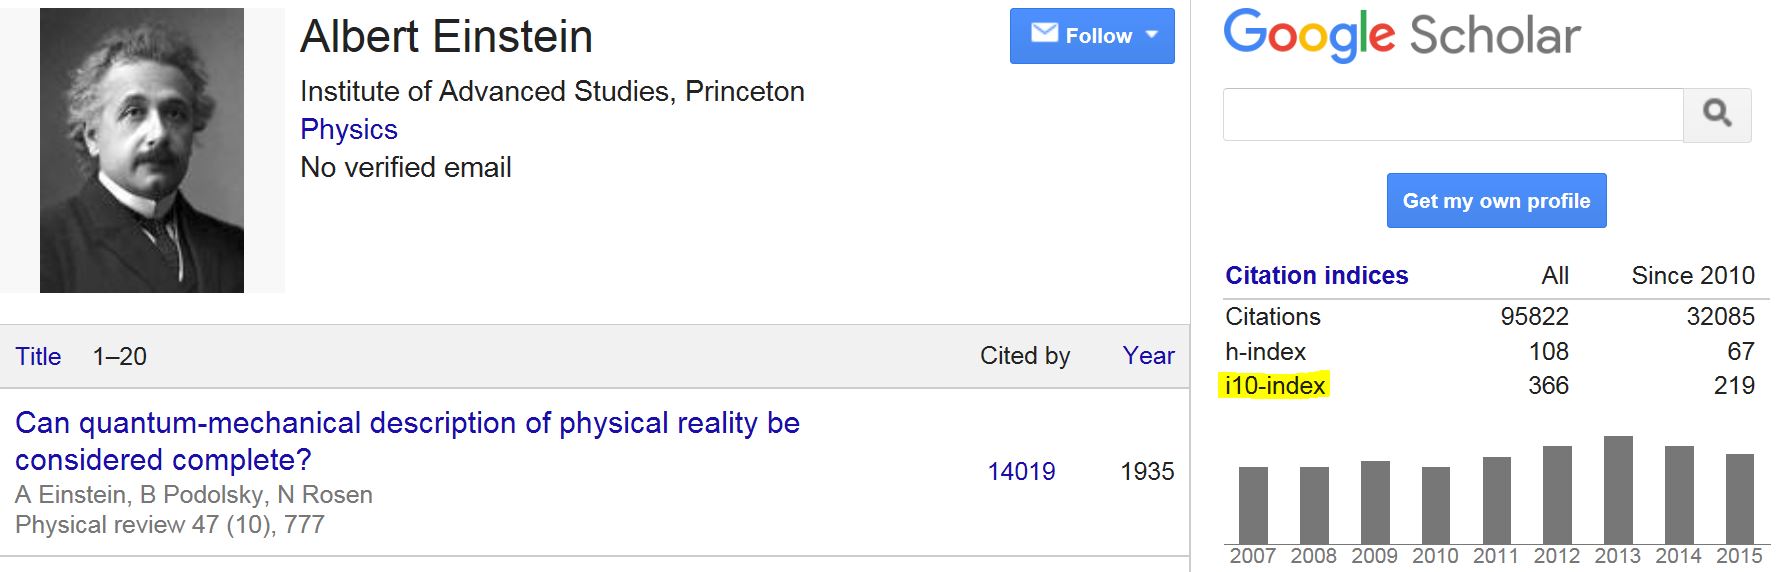 i10-index in Google Scholar